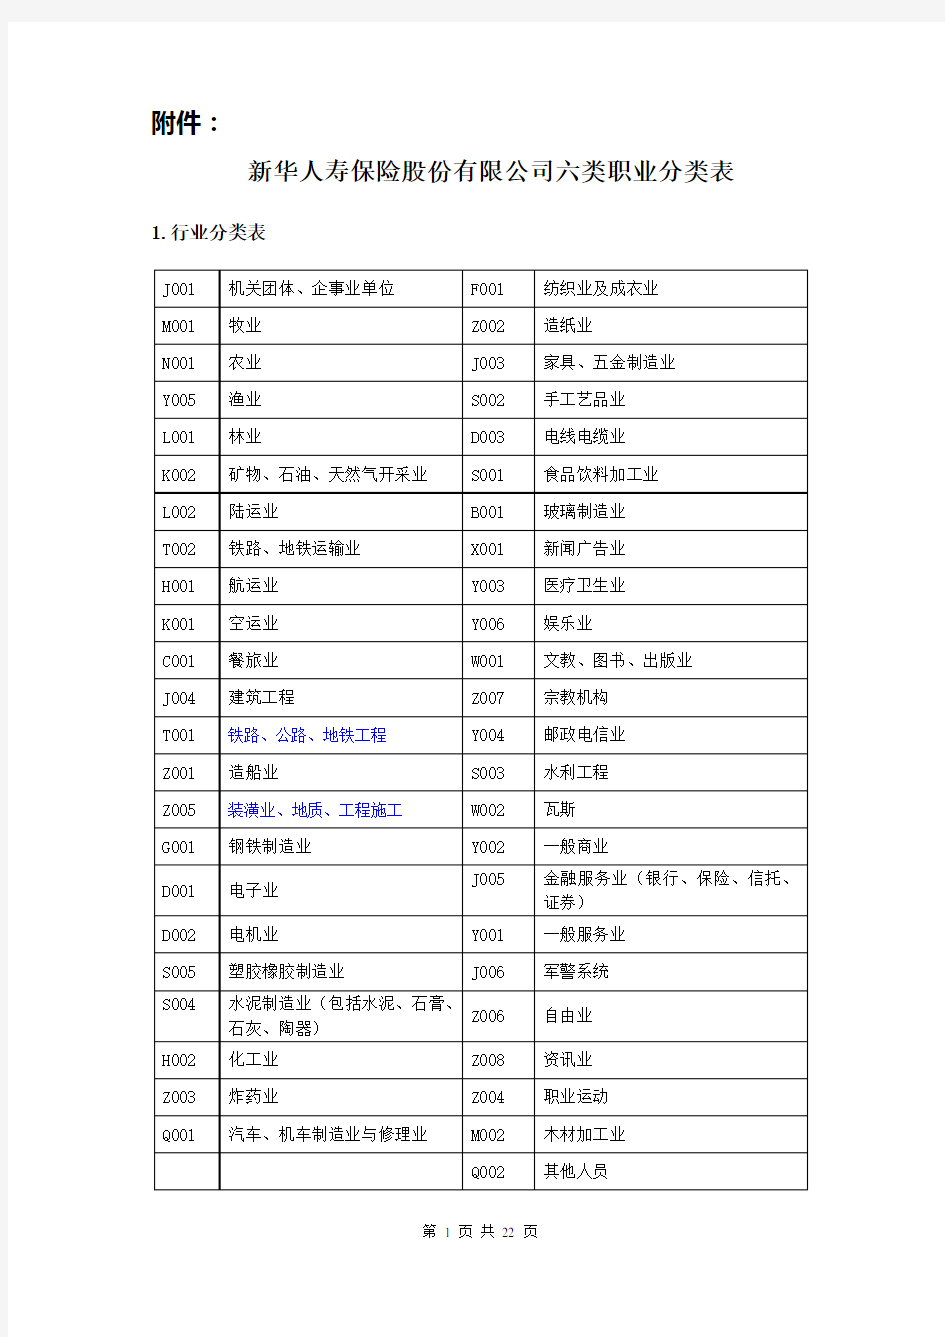 《新华人寿保险股份有限公司六类职业分类表》(2013年版)